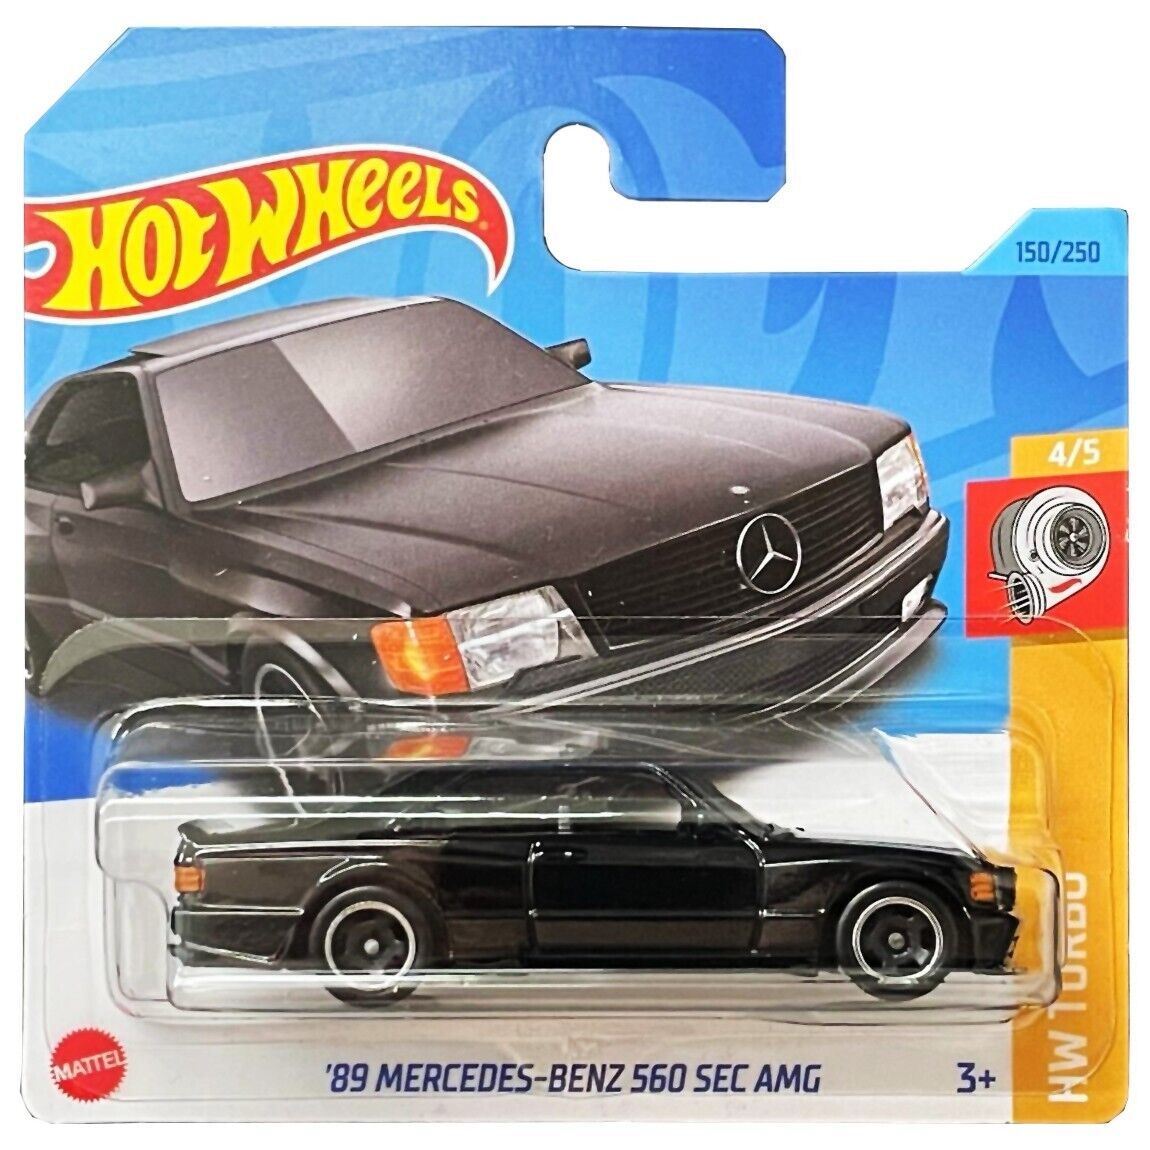 89' Mercedes-benz 560 Sec Amg Hot Wheels Araba